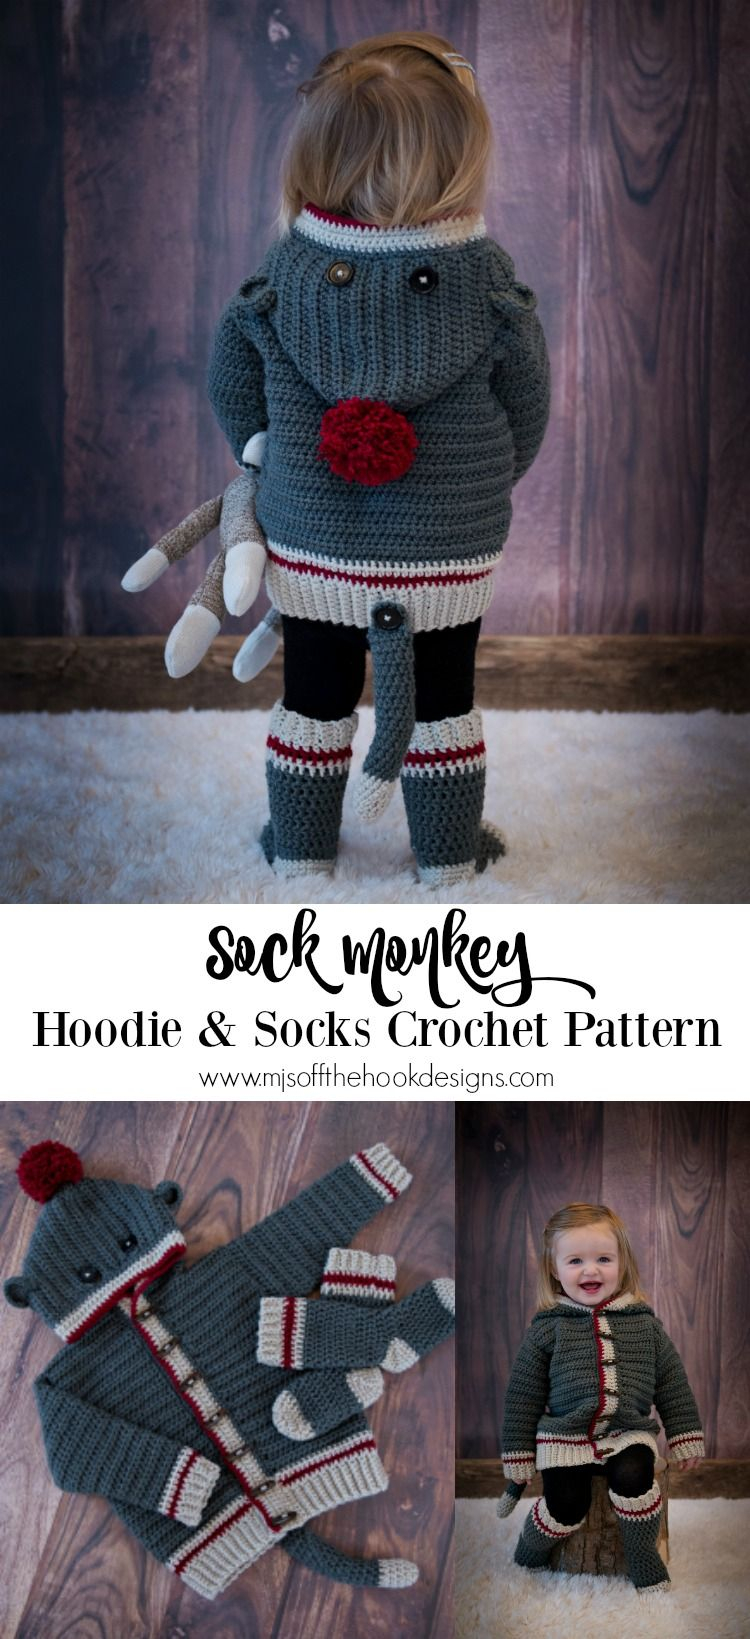 Sock Monkey Crochet Pattern How To Crochet Sock Monkey Hoodie Crochet Pinterest Crochet